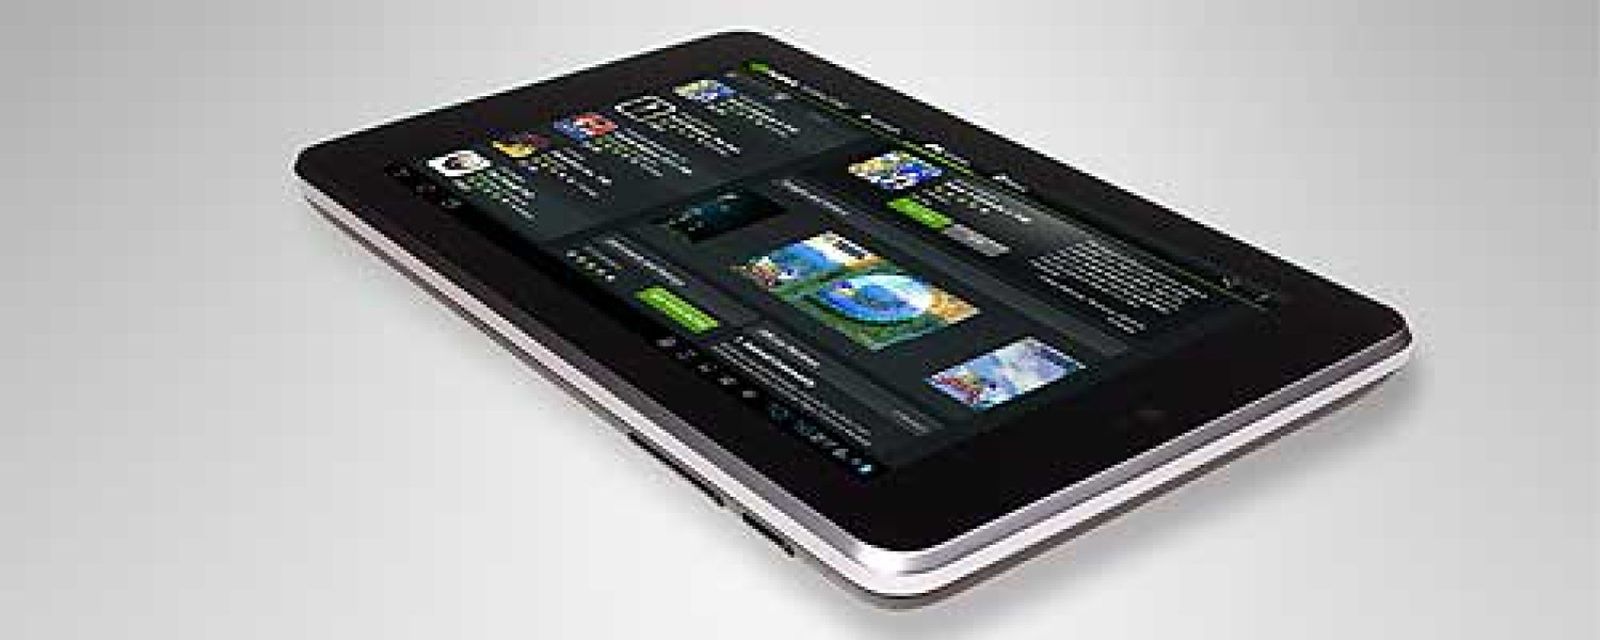 Foto: Google se adelanta y lanza en España su tableta Nexus 7 anti iPad